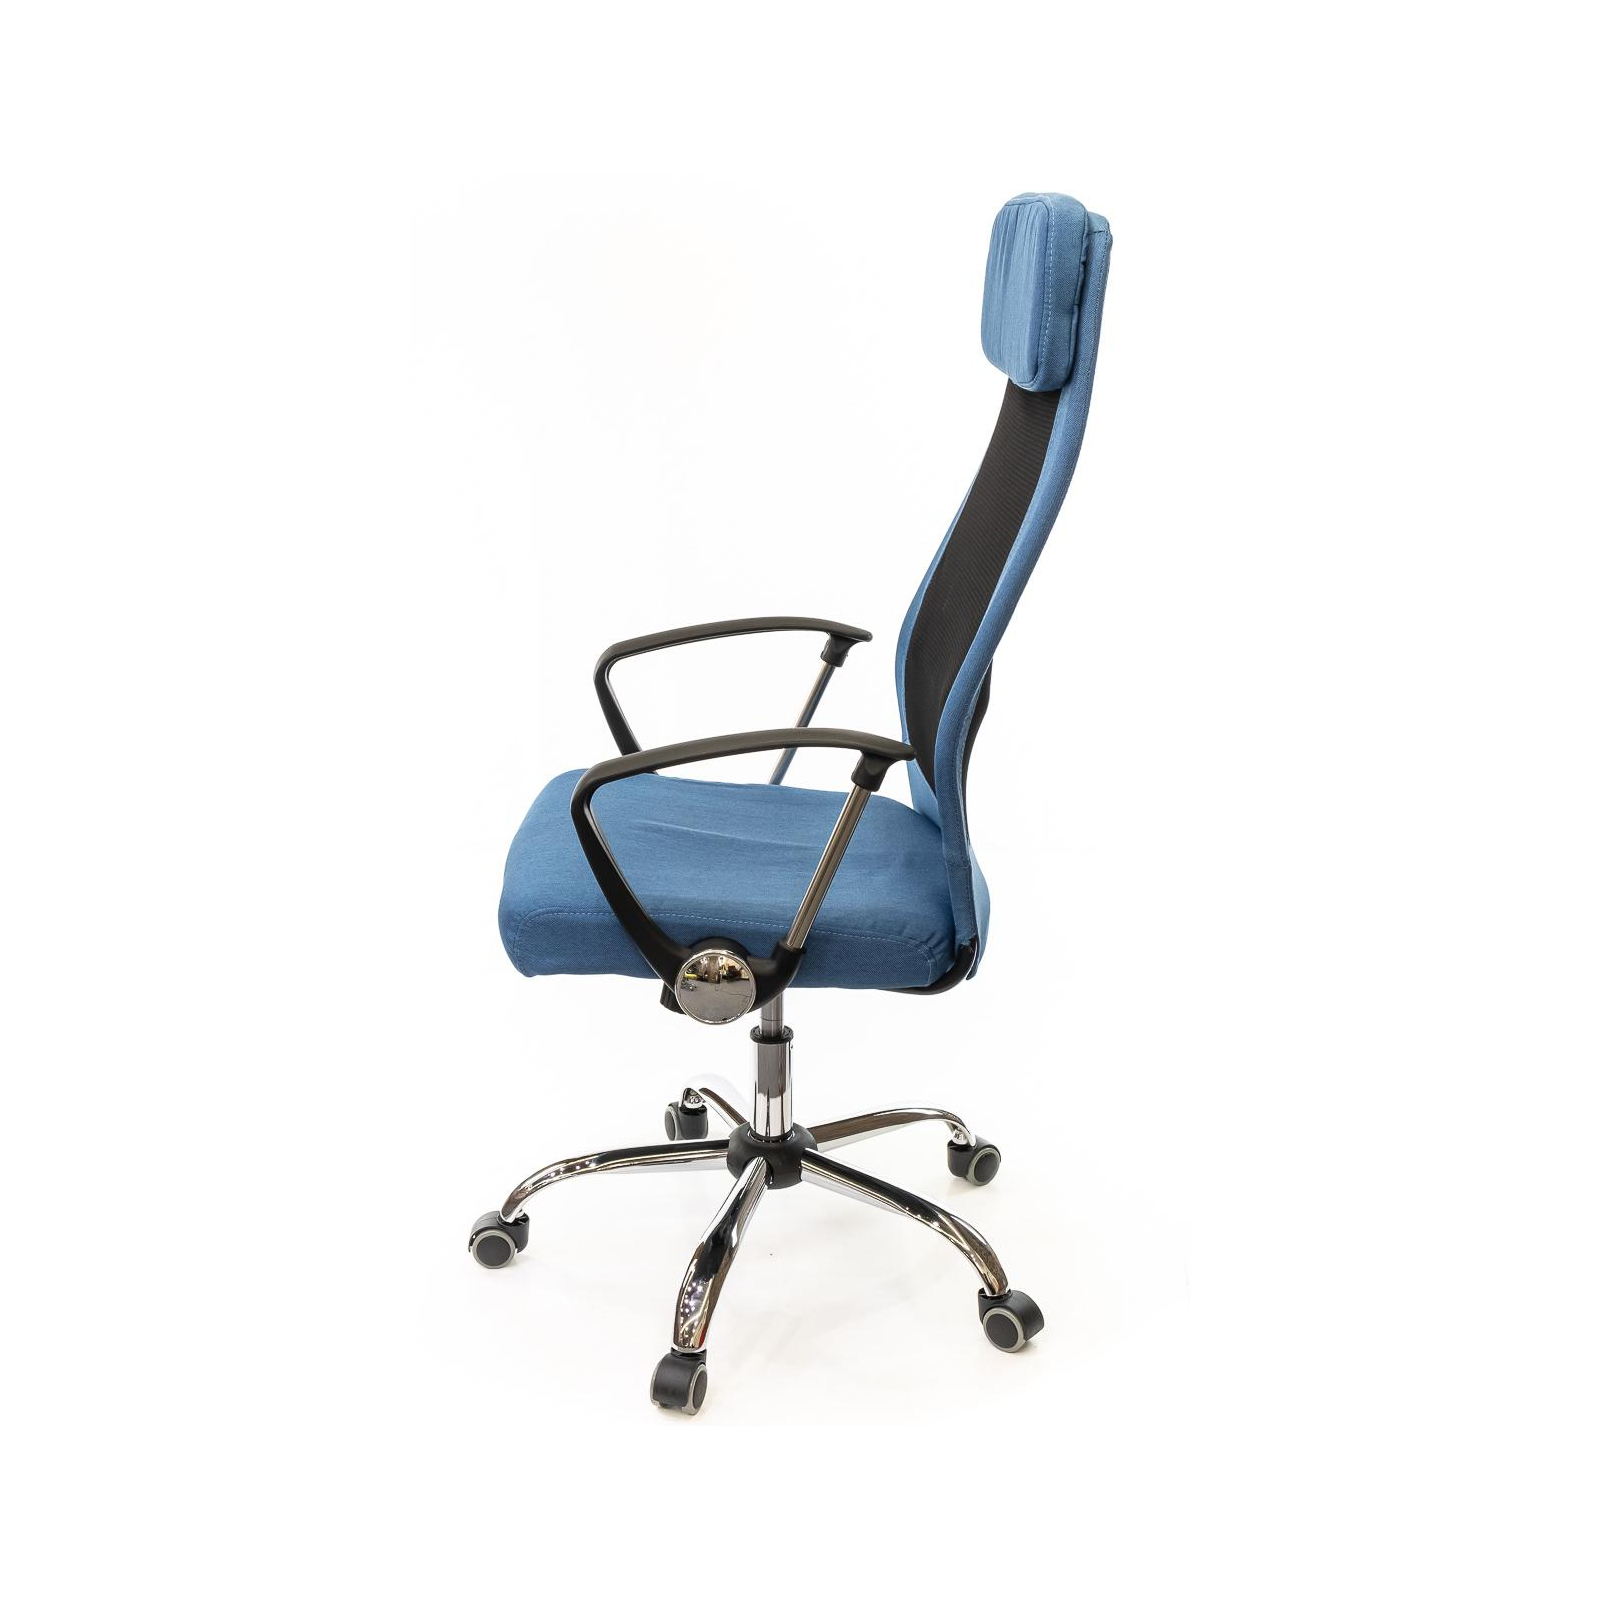 Офісне крісло Аклас Гилмор FX CH TILT Оранжевое (11032) зображення 3